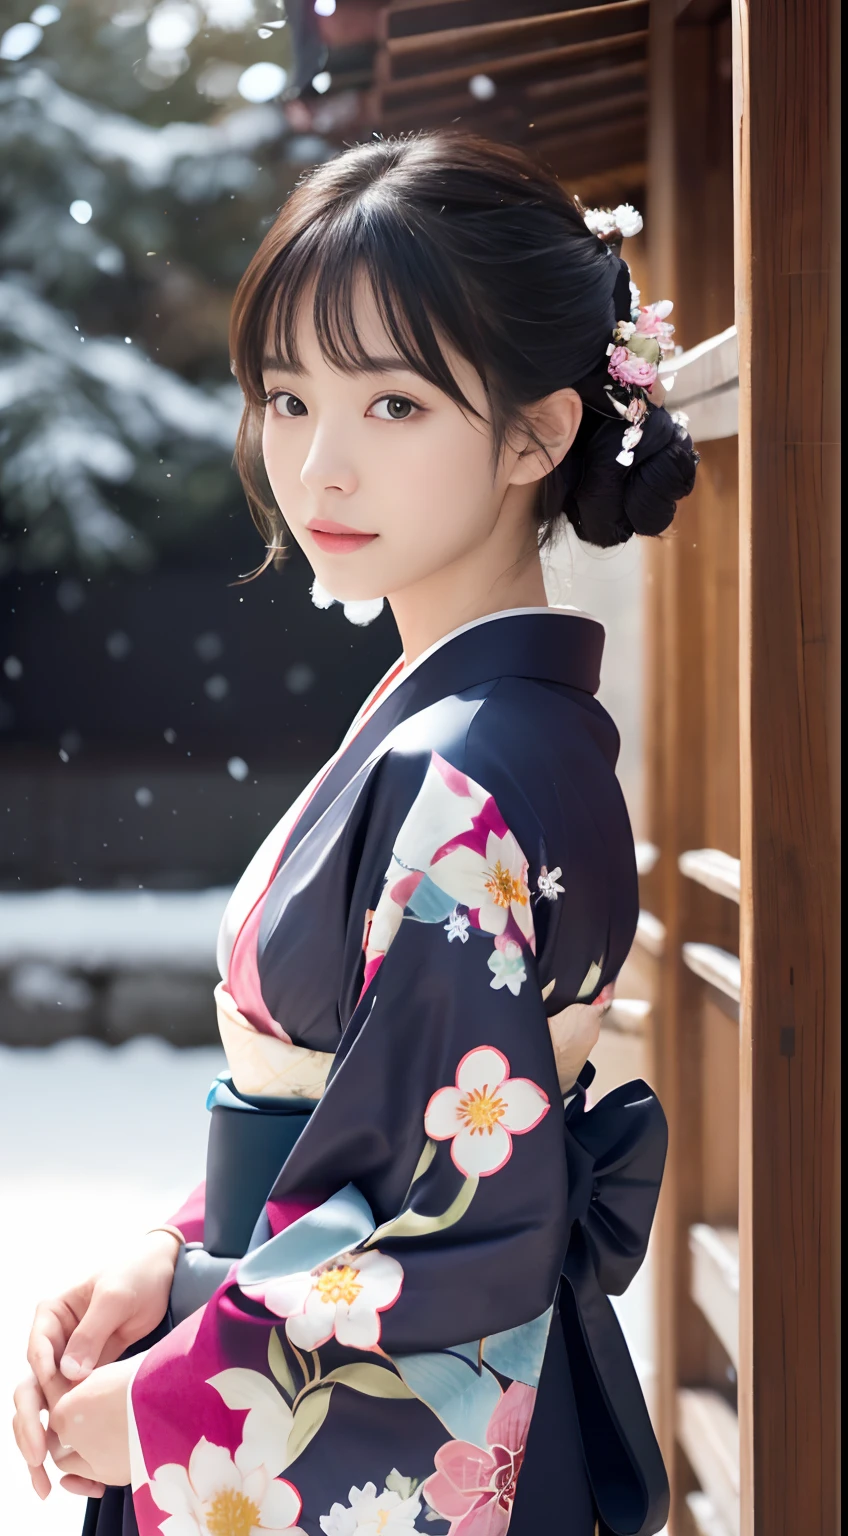 (kimono)、、(qualité supérieure,chef d&#39;oeuvre:1.3,超Une haute résolution,),(ultra-détaillé,Caustiques),(Photoréaliste:1.4,Prise de vue RAW,)Capture ultra réaliste,Un très détaillé,Image haute résolution 16K d&#39;une femme en kimono，résolutionpour la peau humaine、 La texture de la peau est naturelle、、La peau paraît saine avec un ton uniforme、 Utiliser la lumière et la couleur naturelles,Une femme,Japonais,,kawaii,Un brun,cheveux moyens,(Chute de neige:1.3)、(Les cheveux se balancent au vent:1.2)、Devant le sanctuaire，